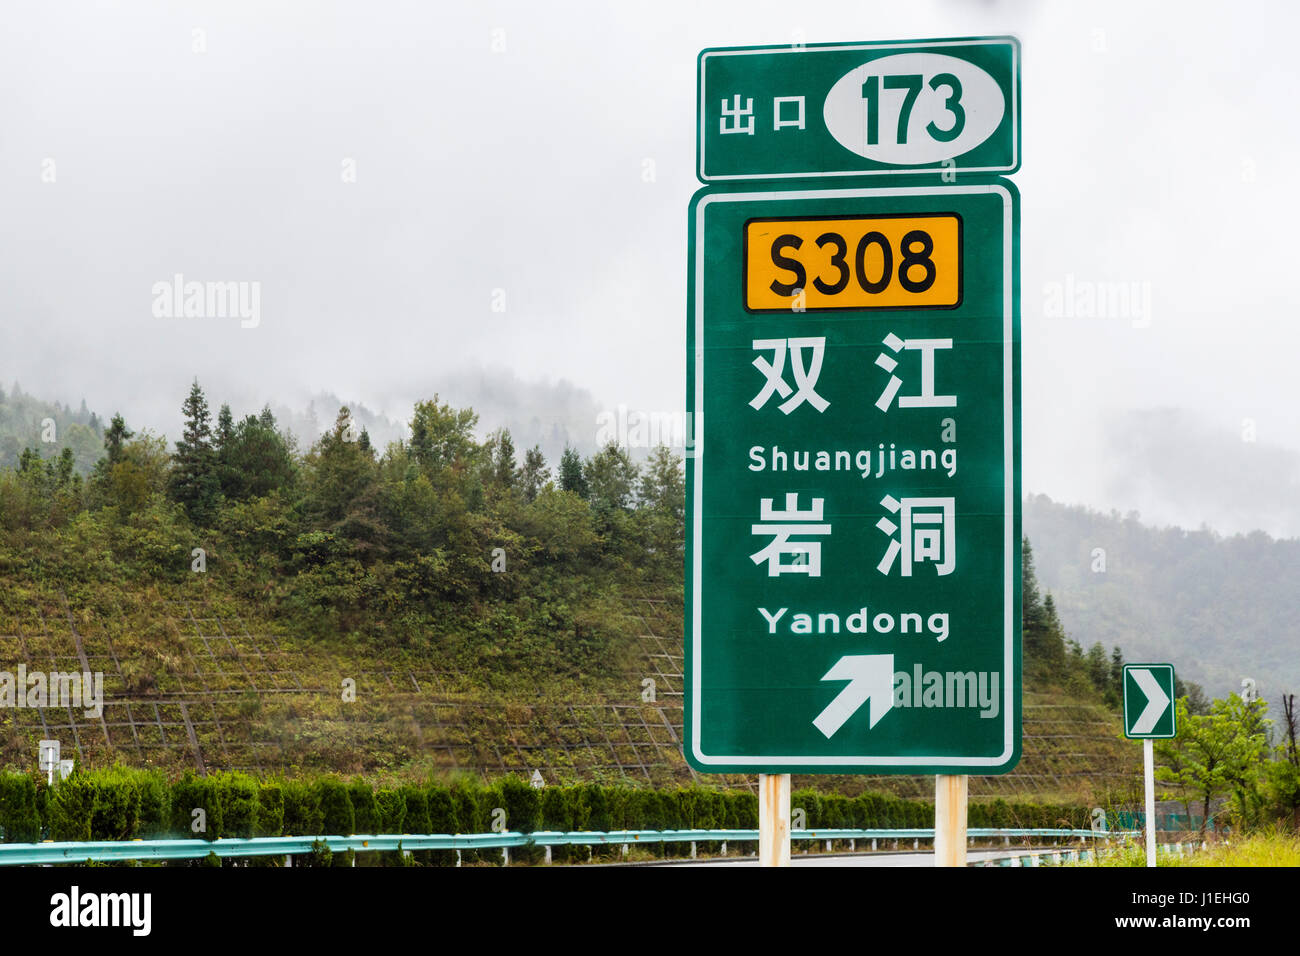 La province du Guizhou, en Chine. Autoroute moderne dans la province de  Guizhou. Signalisation routière pour bretelle de sortie. Remarque sur la  colline de renfort afin de prévenir l'érosion Photo Stock -